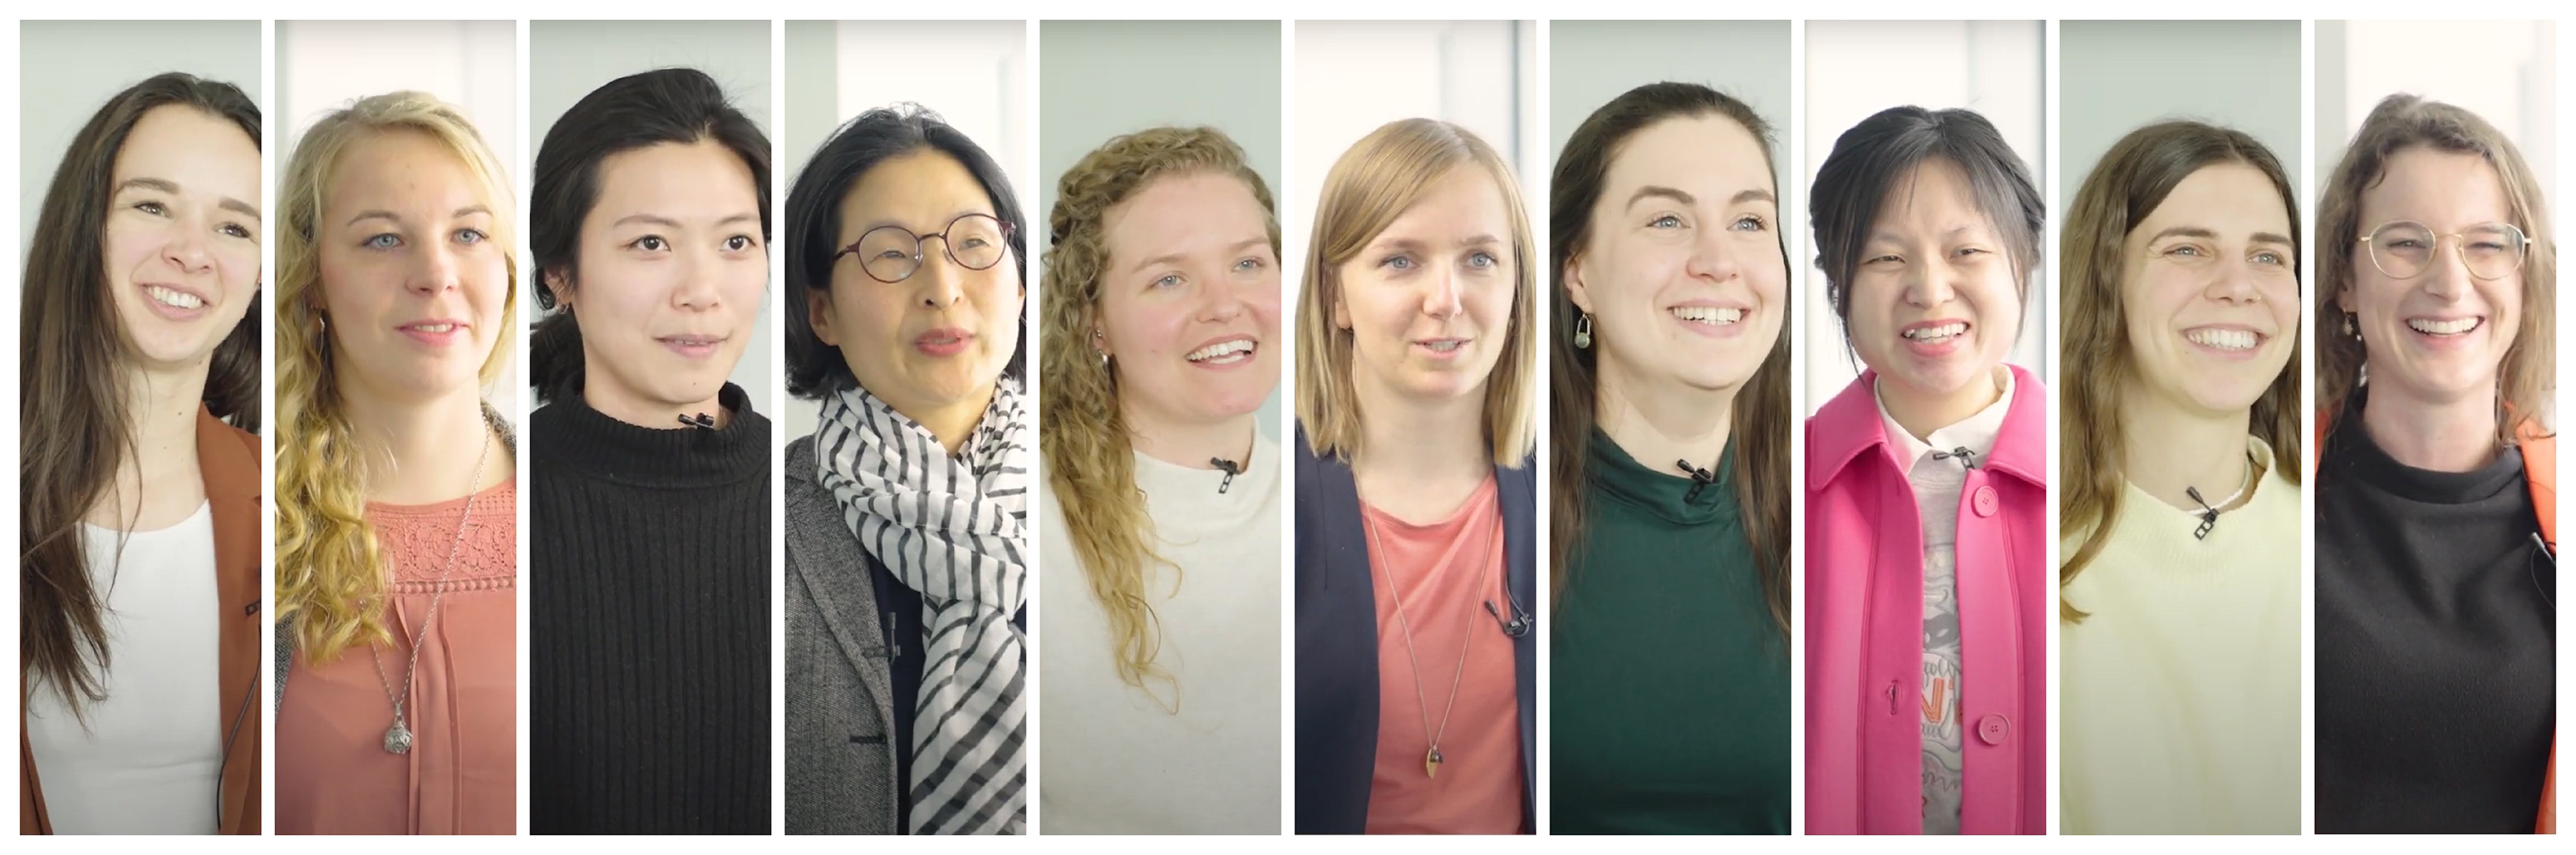 Collage zum Videoformat Frauen in der Wissenschaft